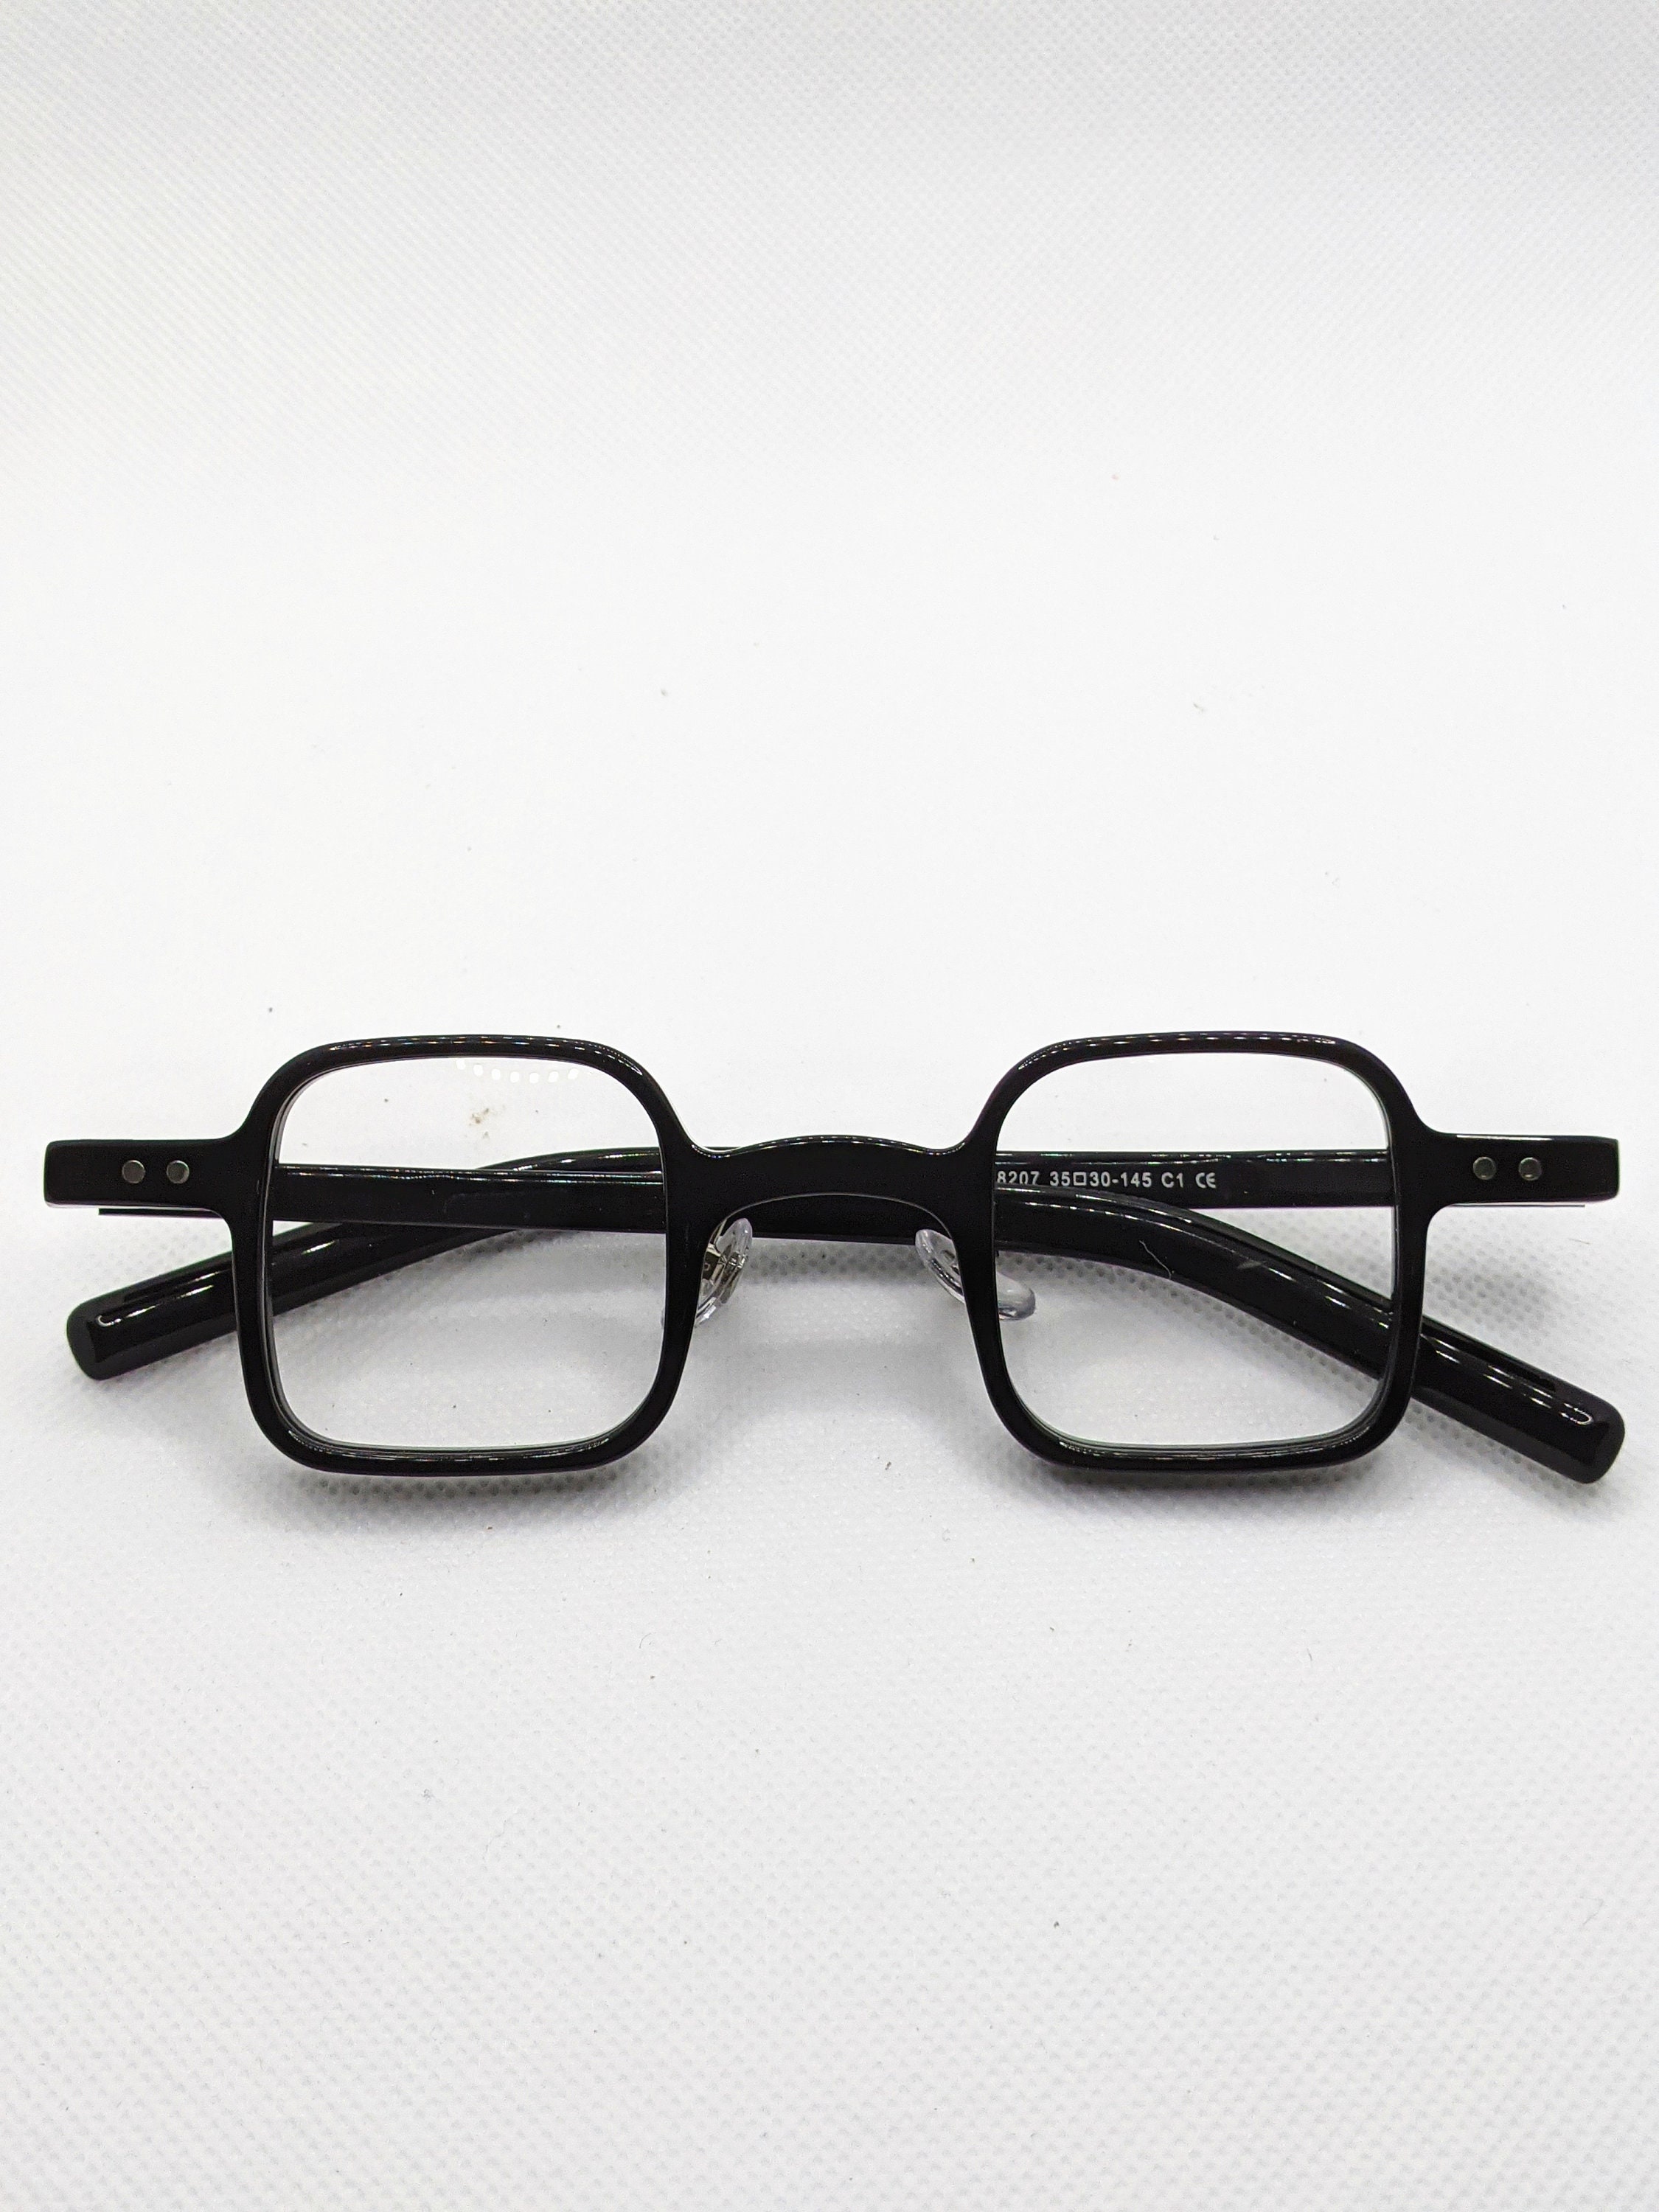 Retro Square Eyeglasses Frames Acetate Mens Women Glasses New